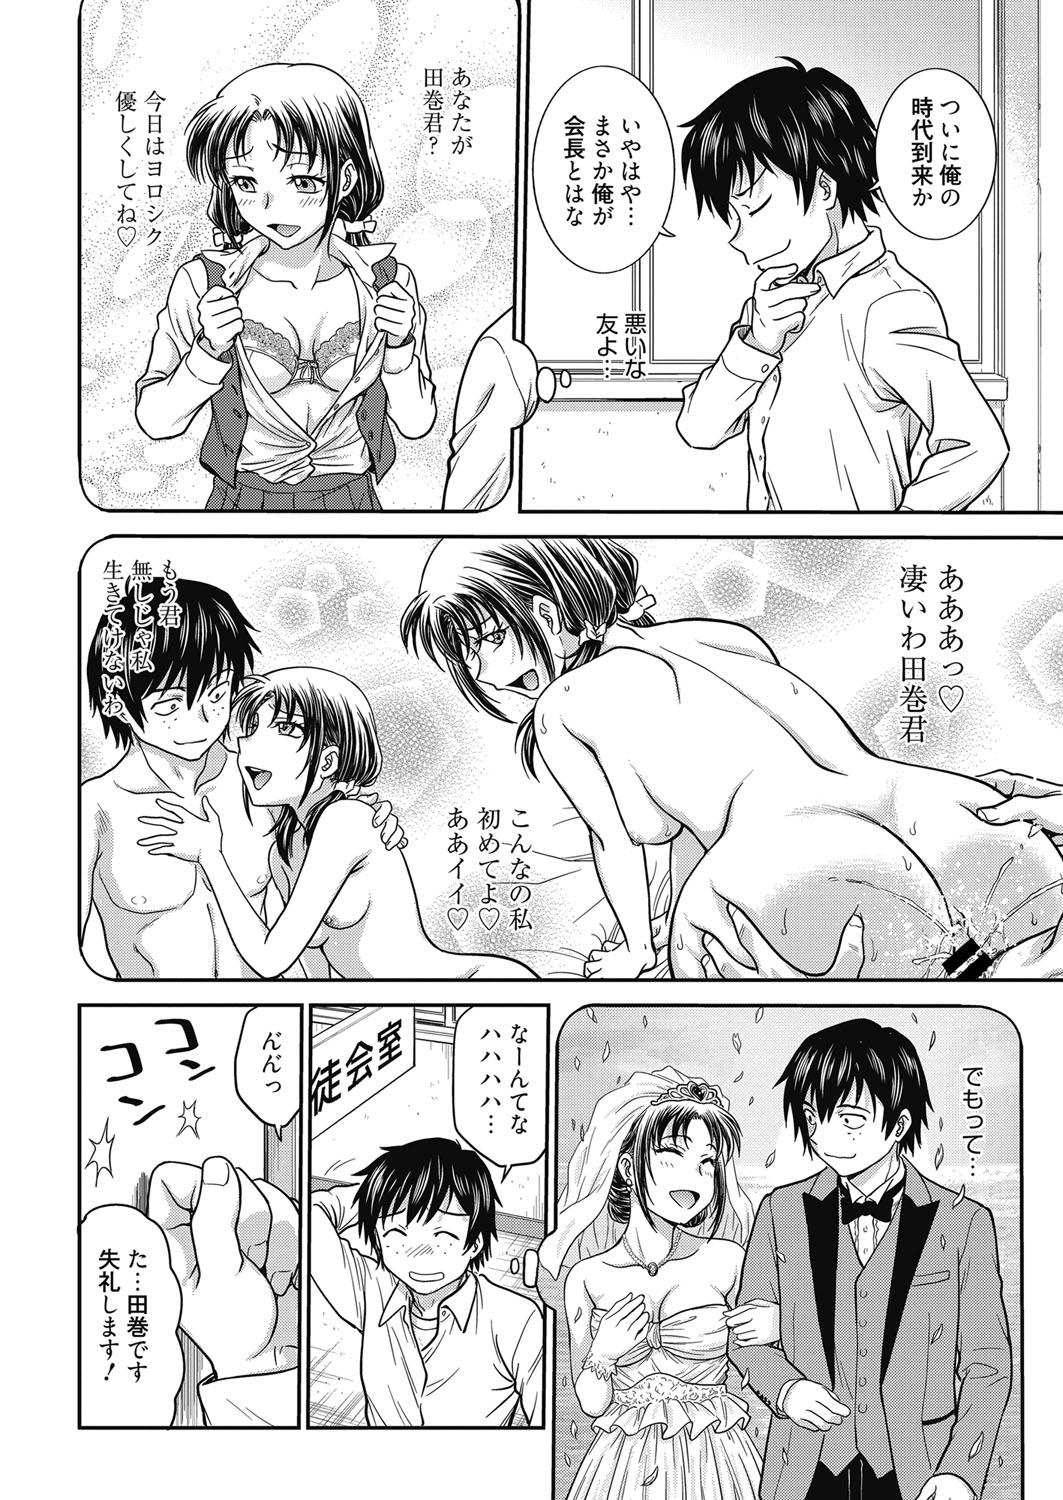 Sloppy Web Manga Bangaichi Vol. 24 Creamy - Page 5